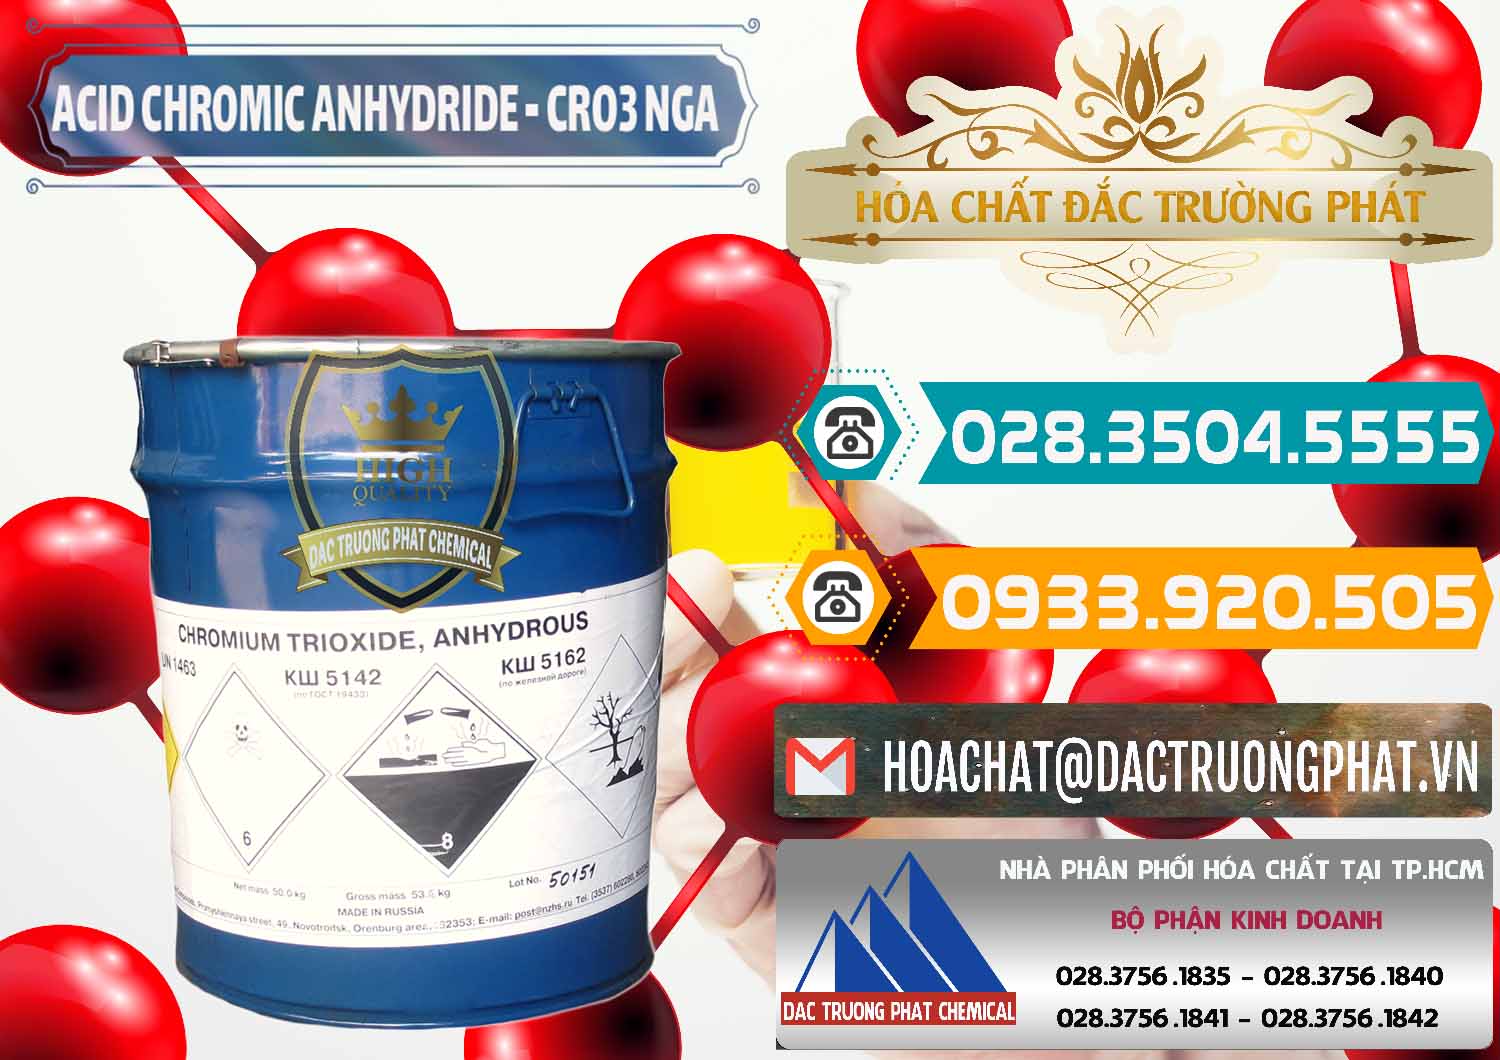 Cty kinh doanh ( bán ) Acid Chromic Anhydride - Cromic CRO3 Nga Russia - 0006 - Đơn vị nhập khẩu và phân phối hóa chất tại TP.HCM - congtyhoachat.vn